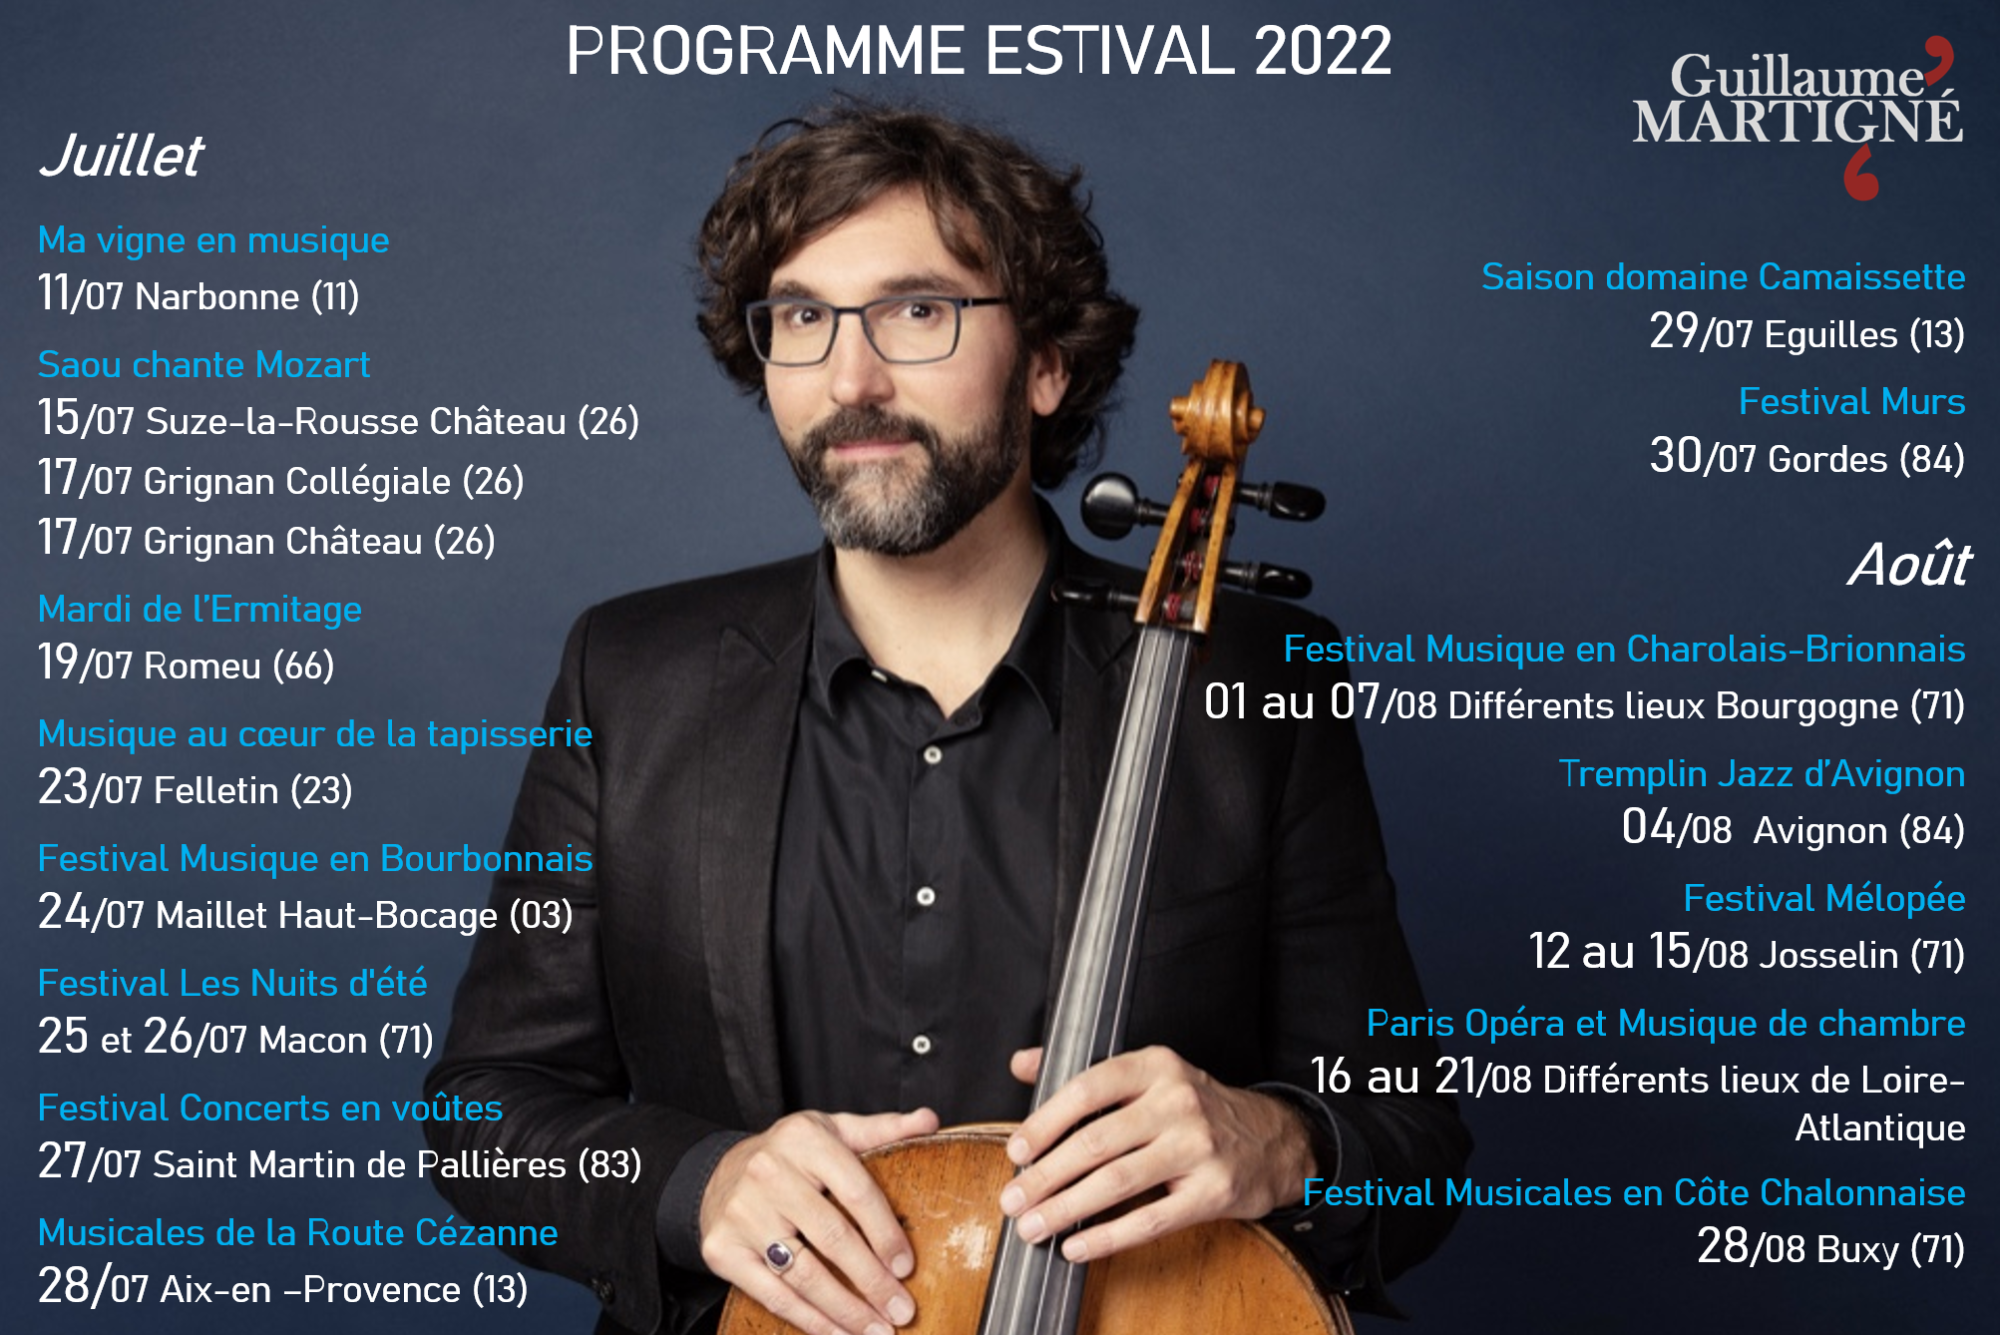 Guillaume Martigné violoncelliste français